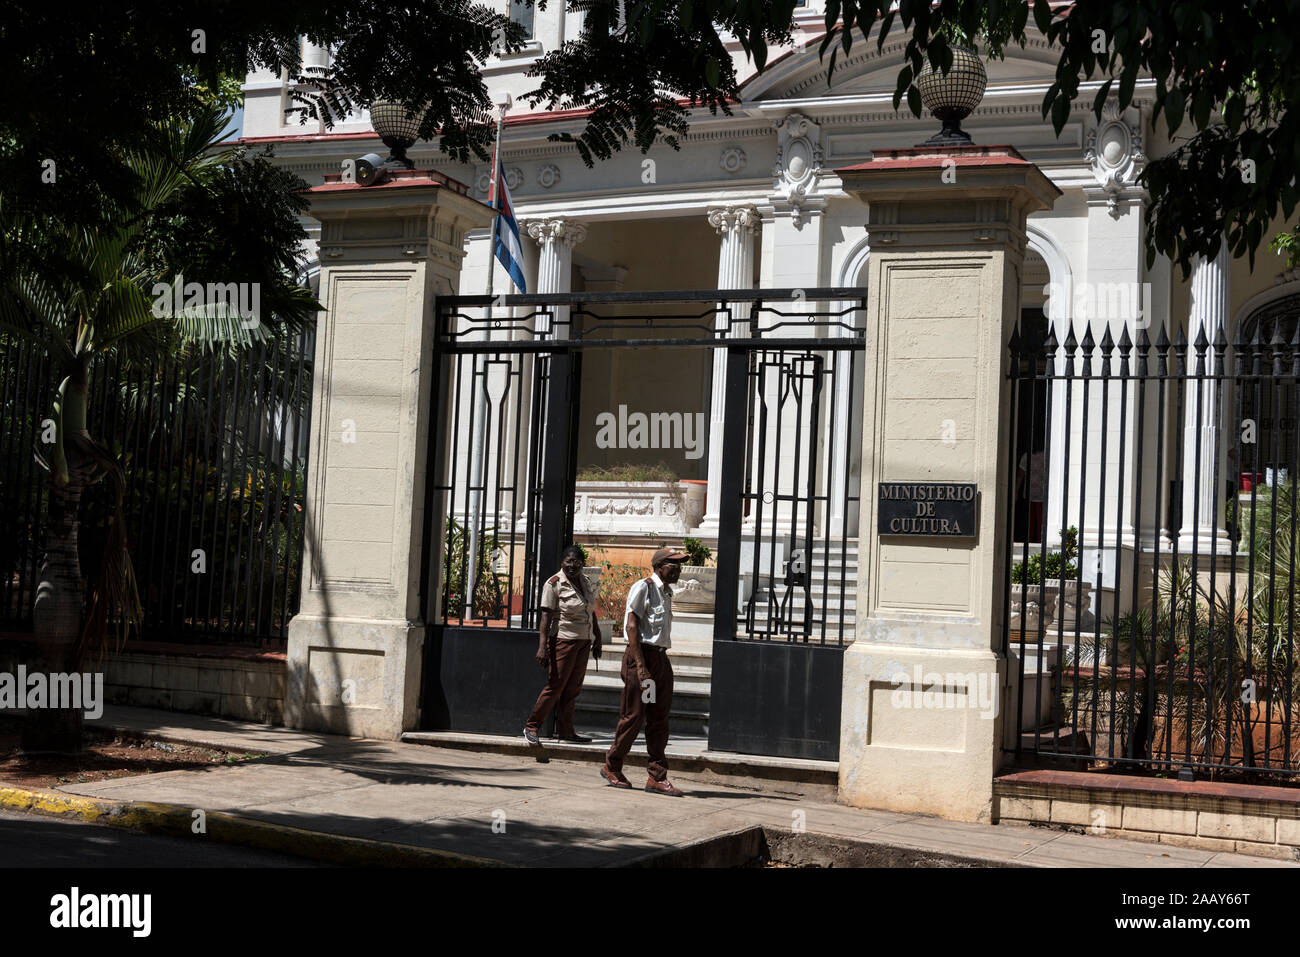 Cuban Ministry of Culture - Ministerio de Cultura de Cuba on Ave Carlos Manuel de Cespedes 258 Calle 2 in Havana, Cuba: Stock Photo